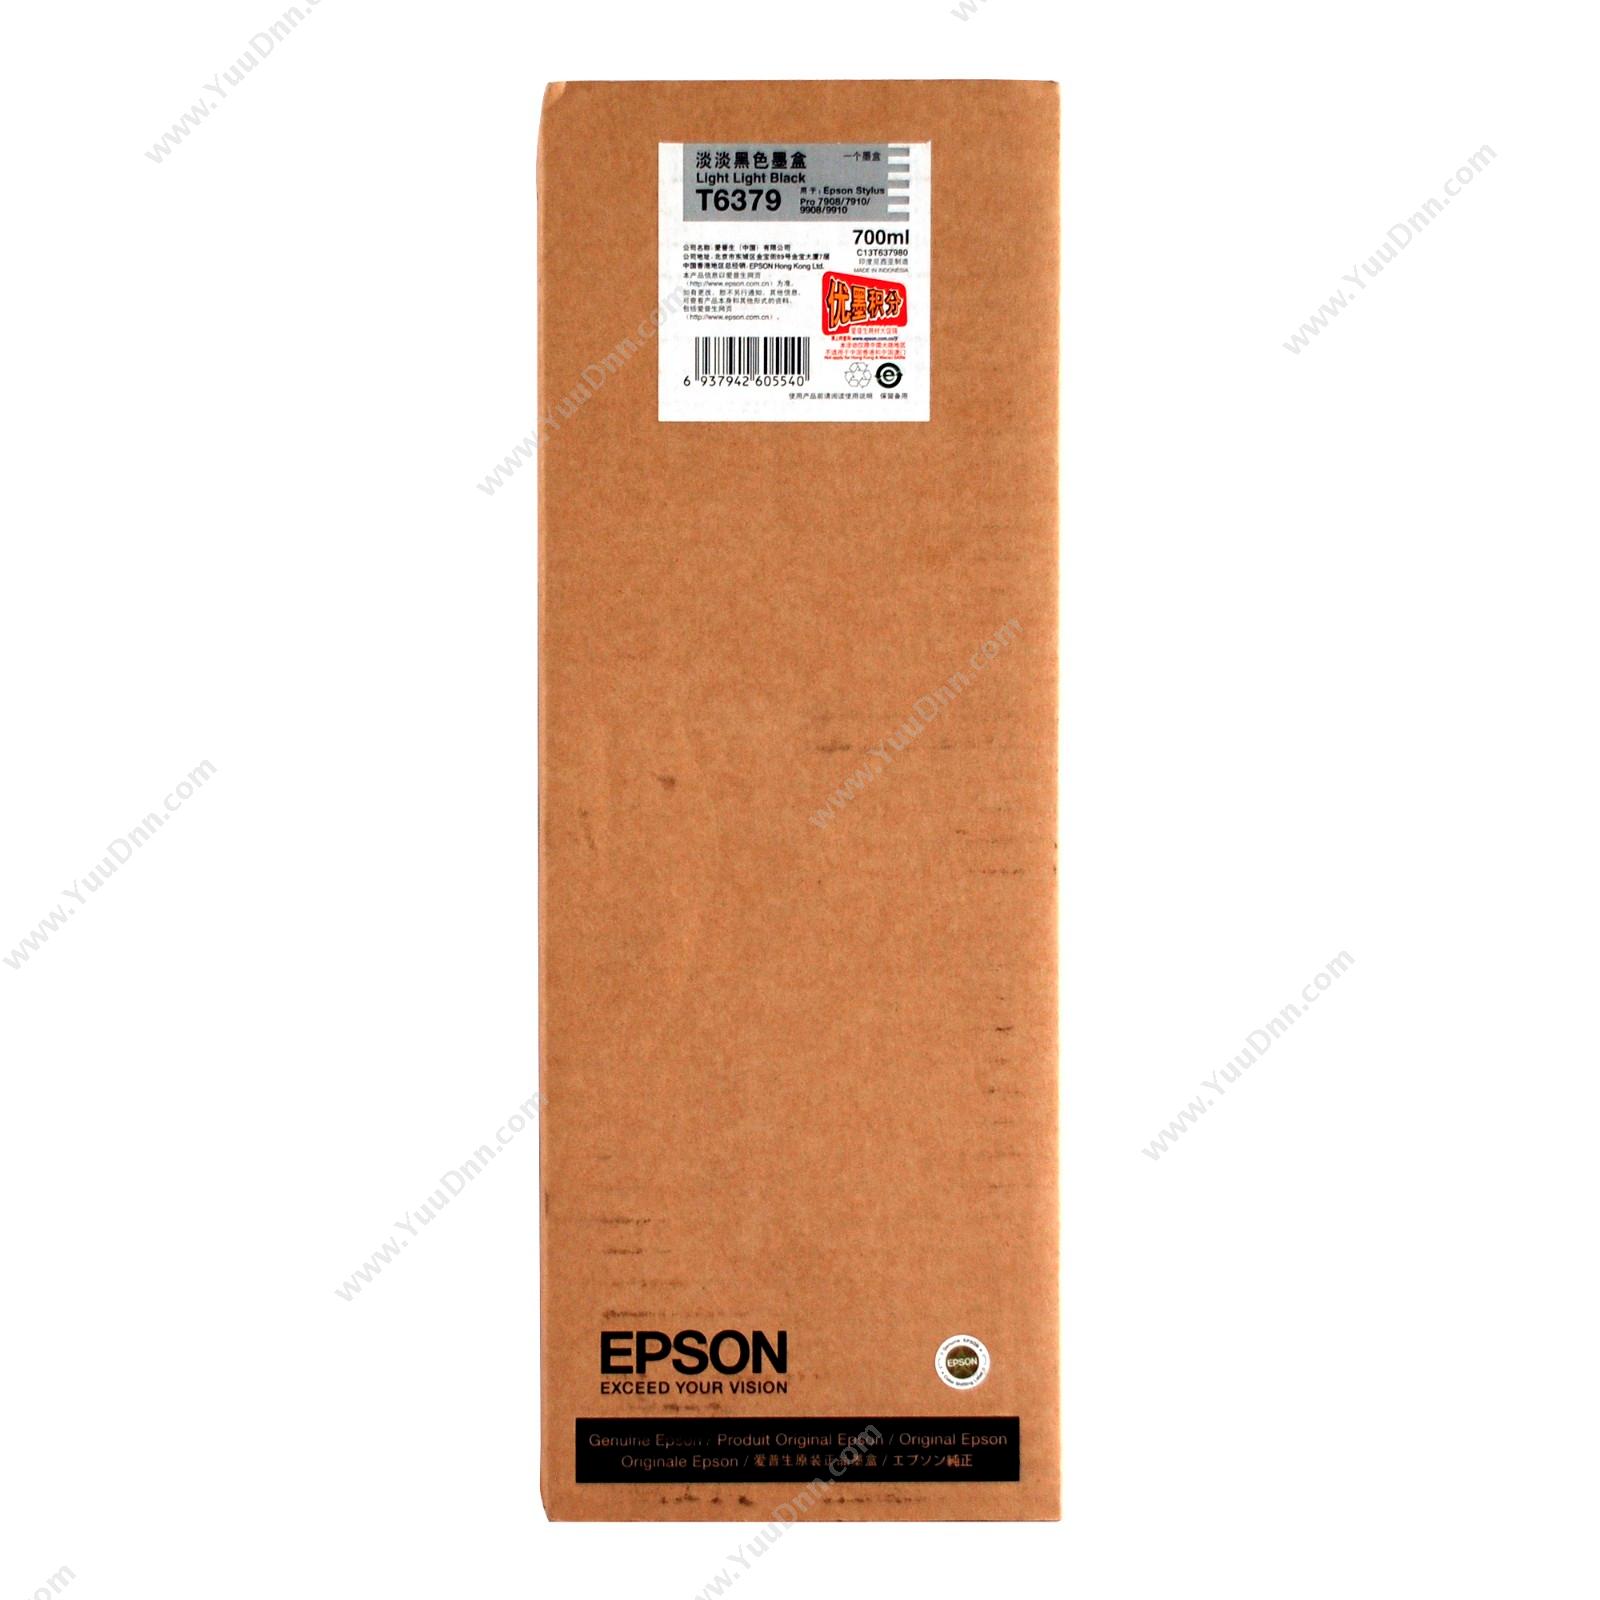 爱普生 EpsonPro9910浅浅黑墨700ml（C13T637980）墨盒